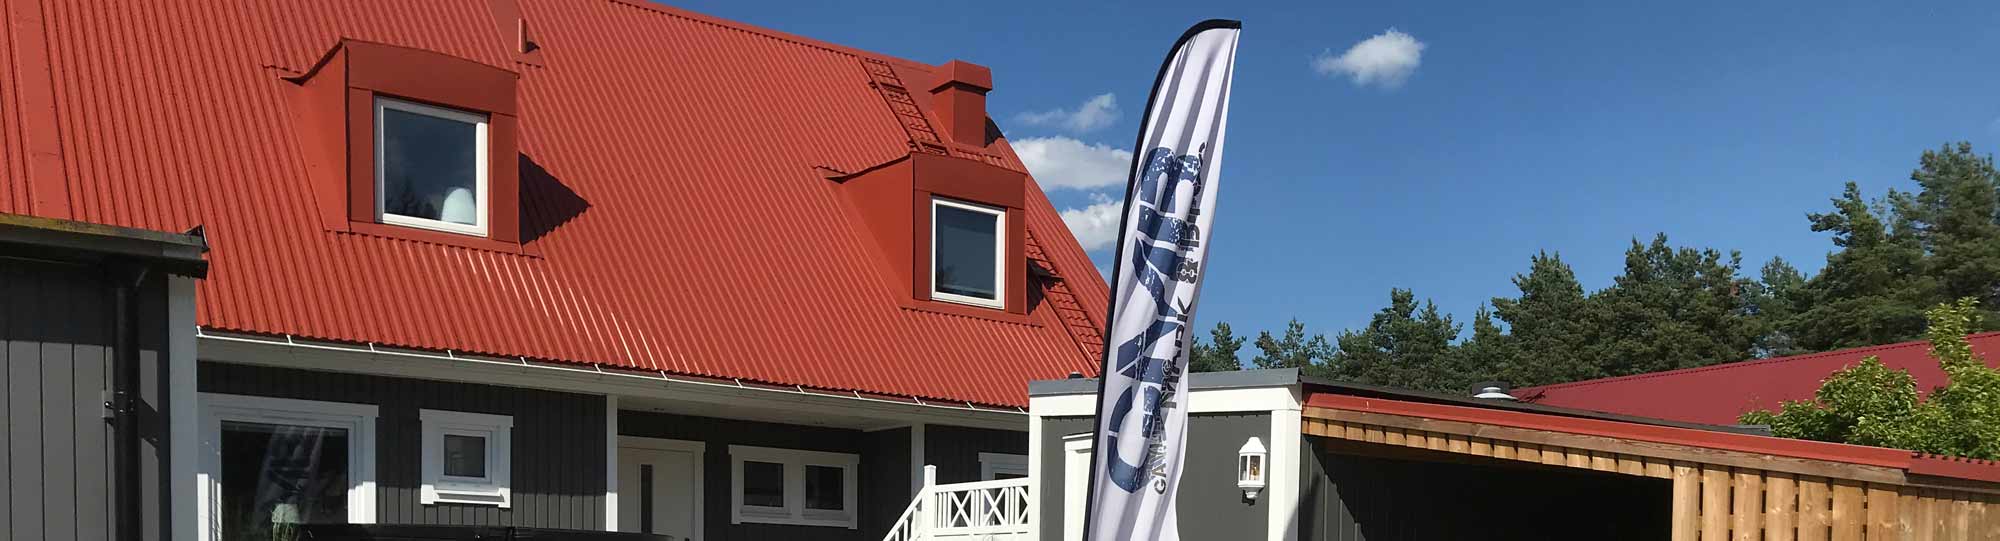 En flagga med texten Gävleborg mark och bygg som står framför ett hus